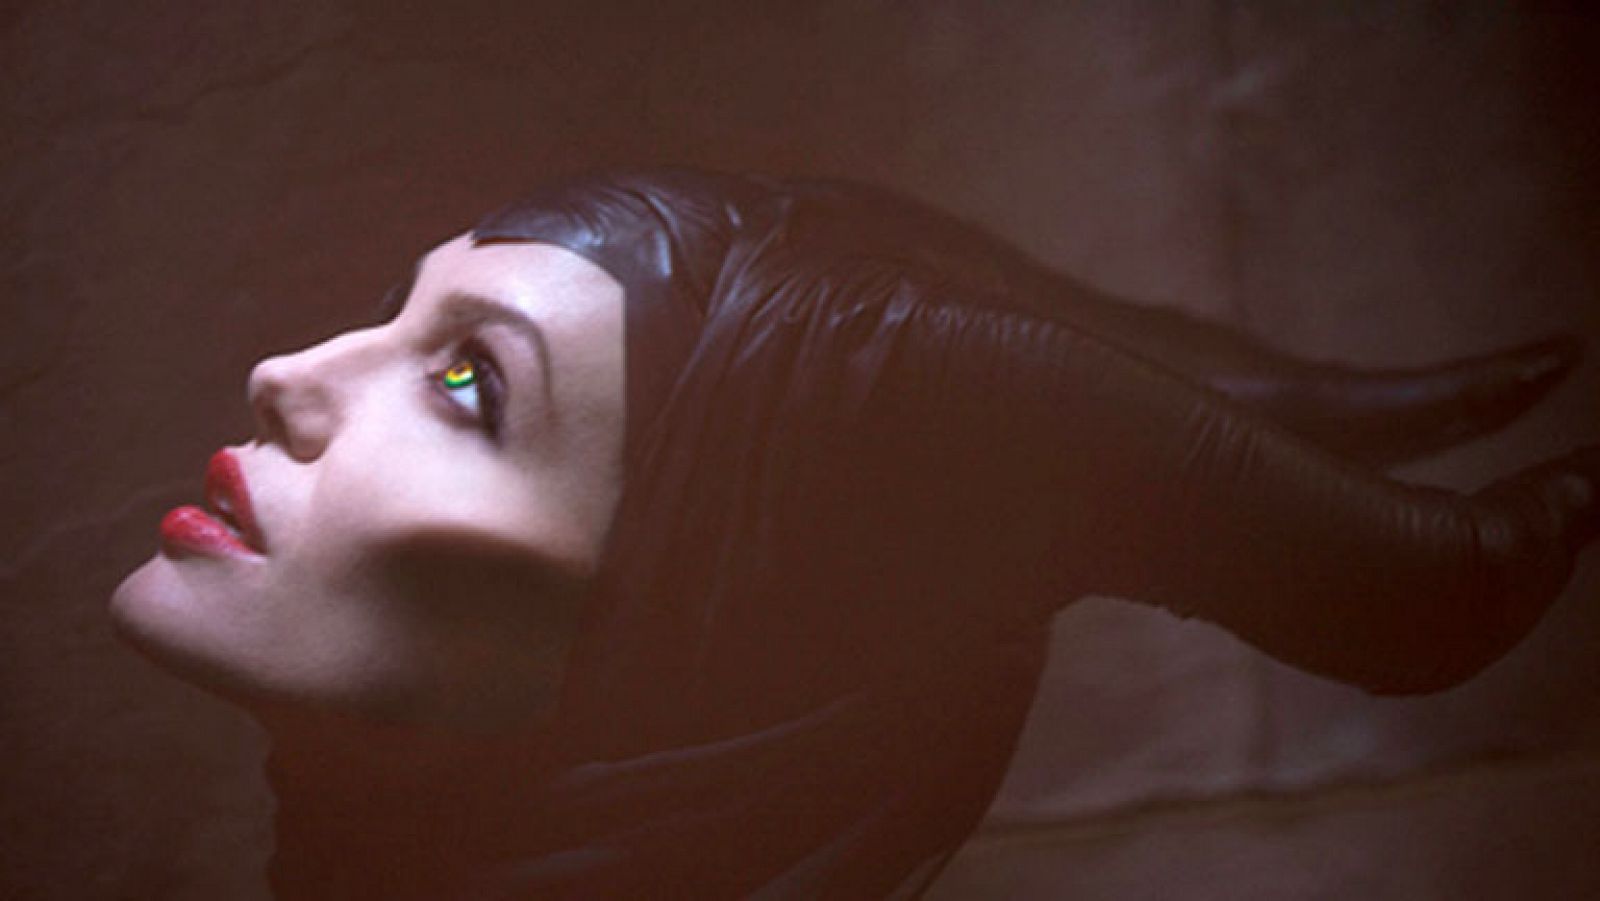 D Corazón: Corazón - Angelina Jolie será Maléfica en el cine | RTVE Play